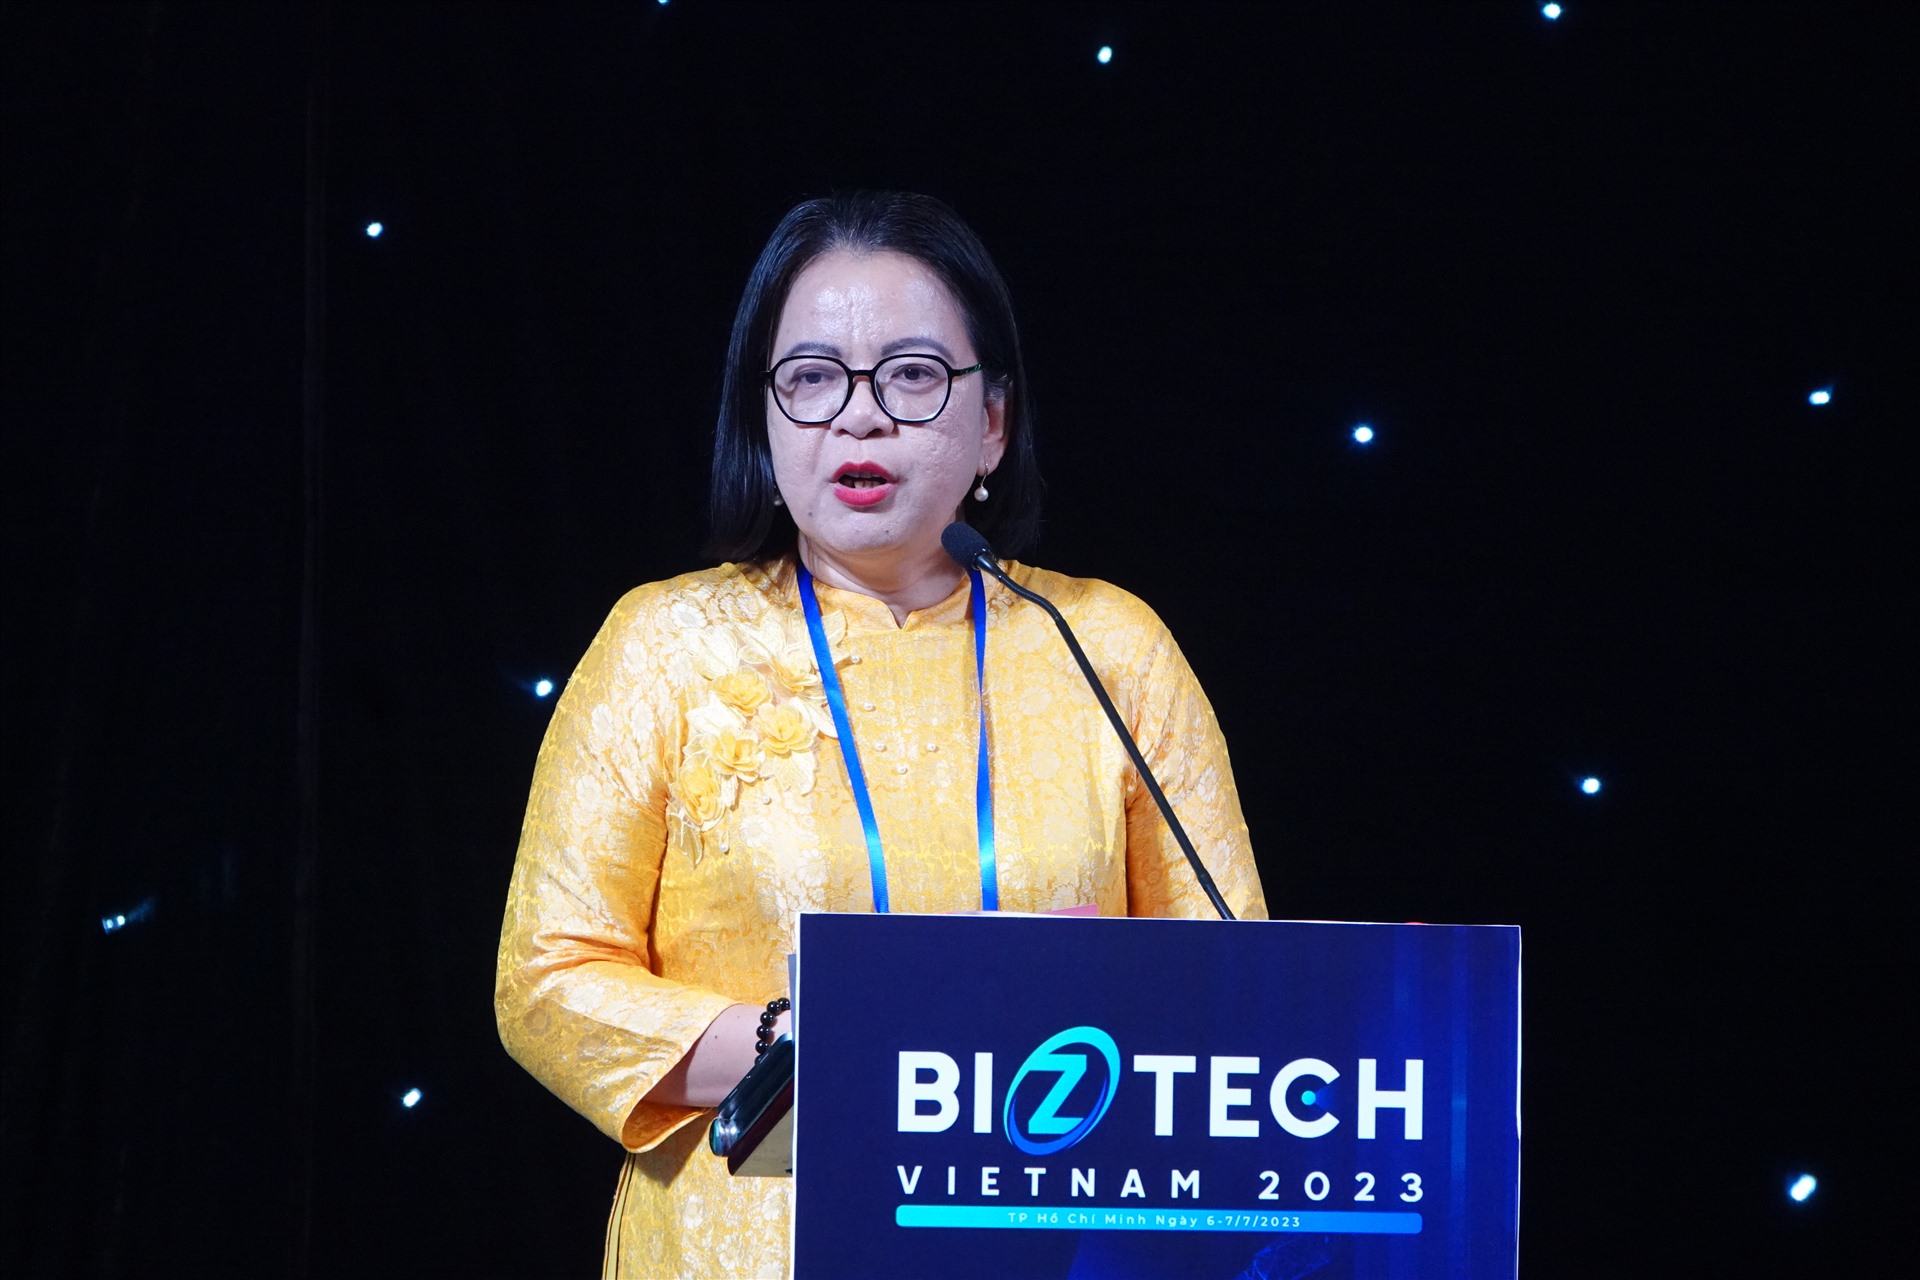 Bà Võ Thị Trung Trinh, Phó giám đốc Sở Thông tin và Truyền thông TPHCM nhấn mạnh thúc đẩy kinh tế số là mục tiêu quan trọng của địa phương. Ảnh: Nguyễn Đăng